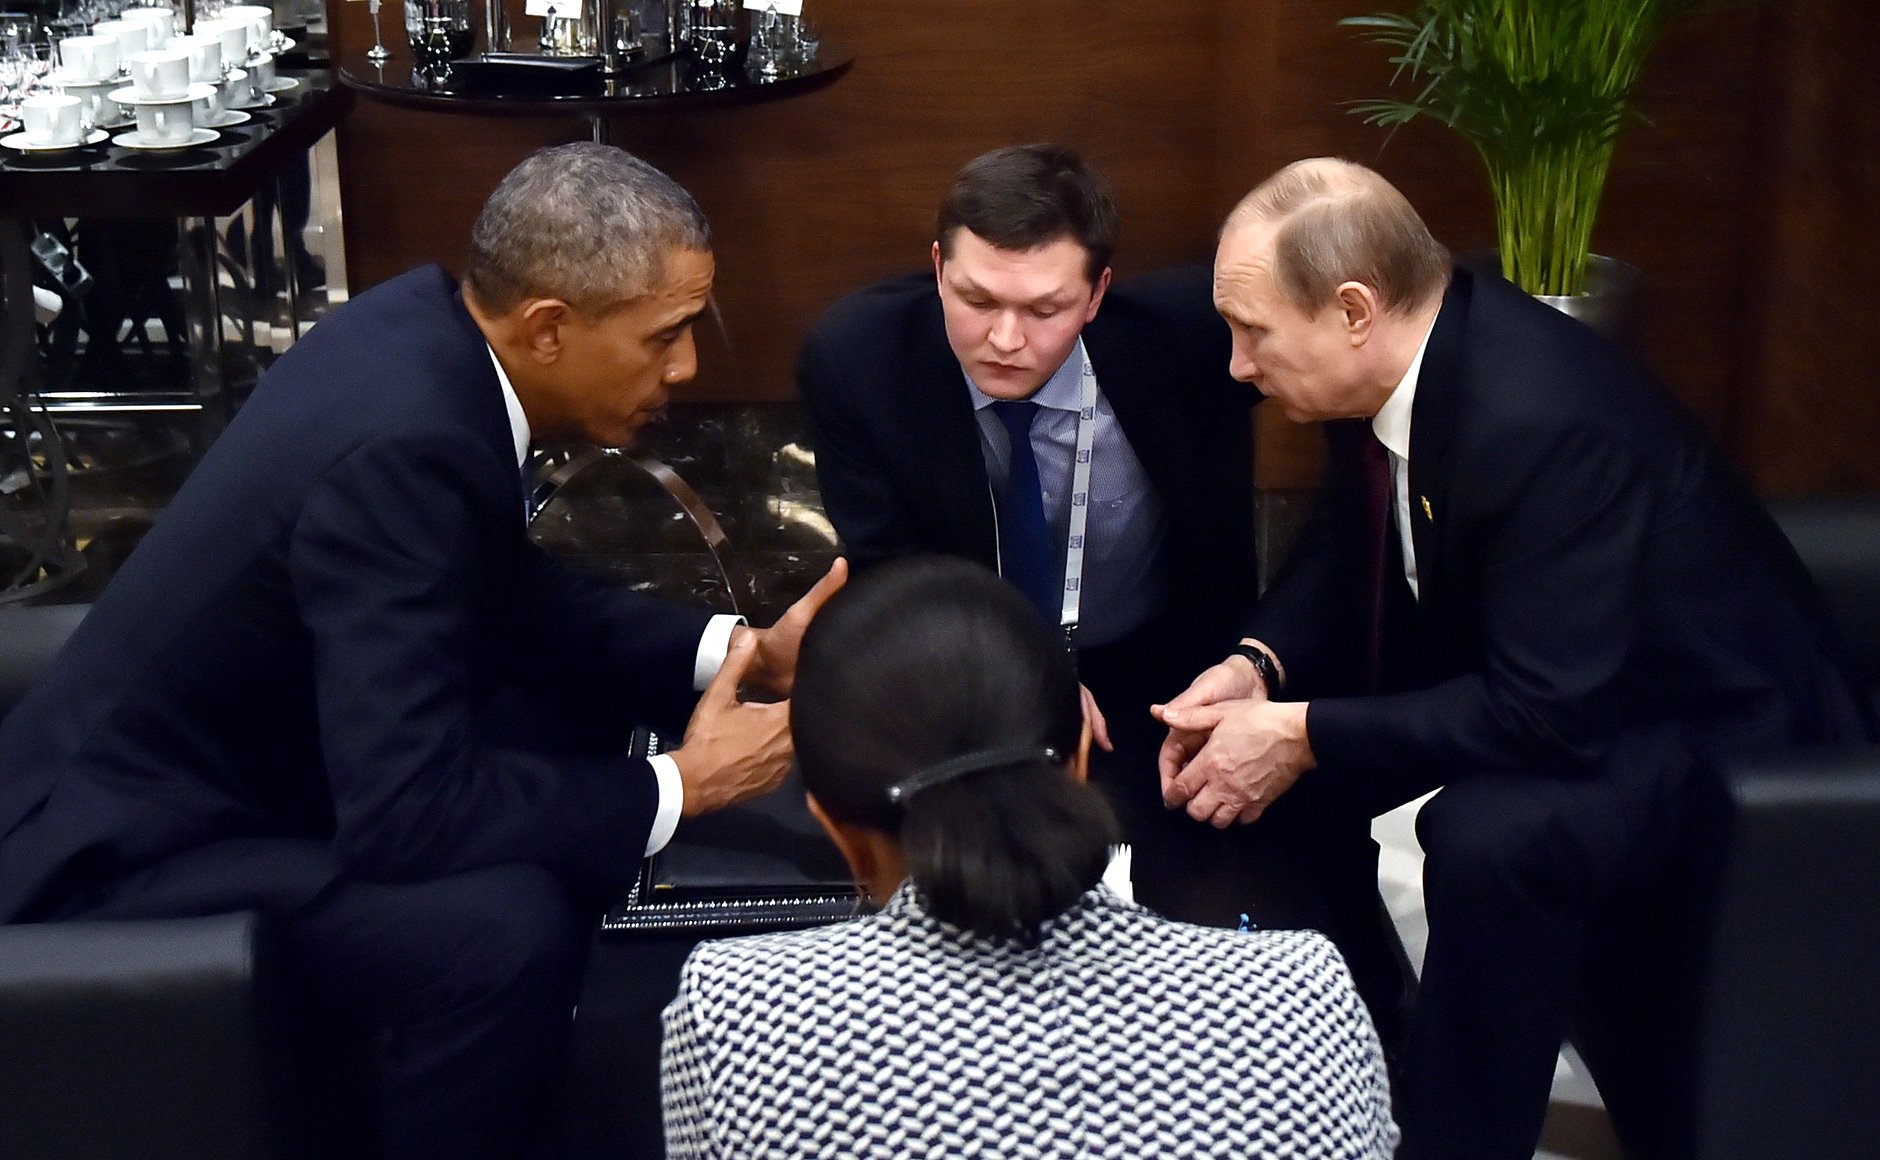 Obama & Putin Meet at G20